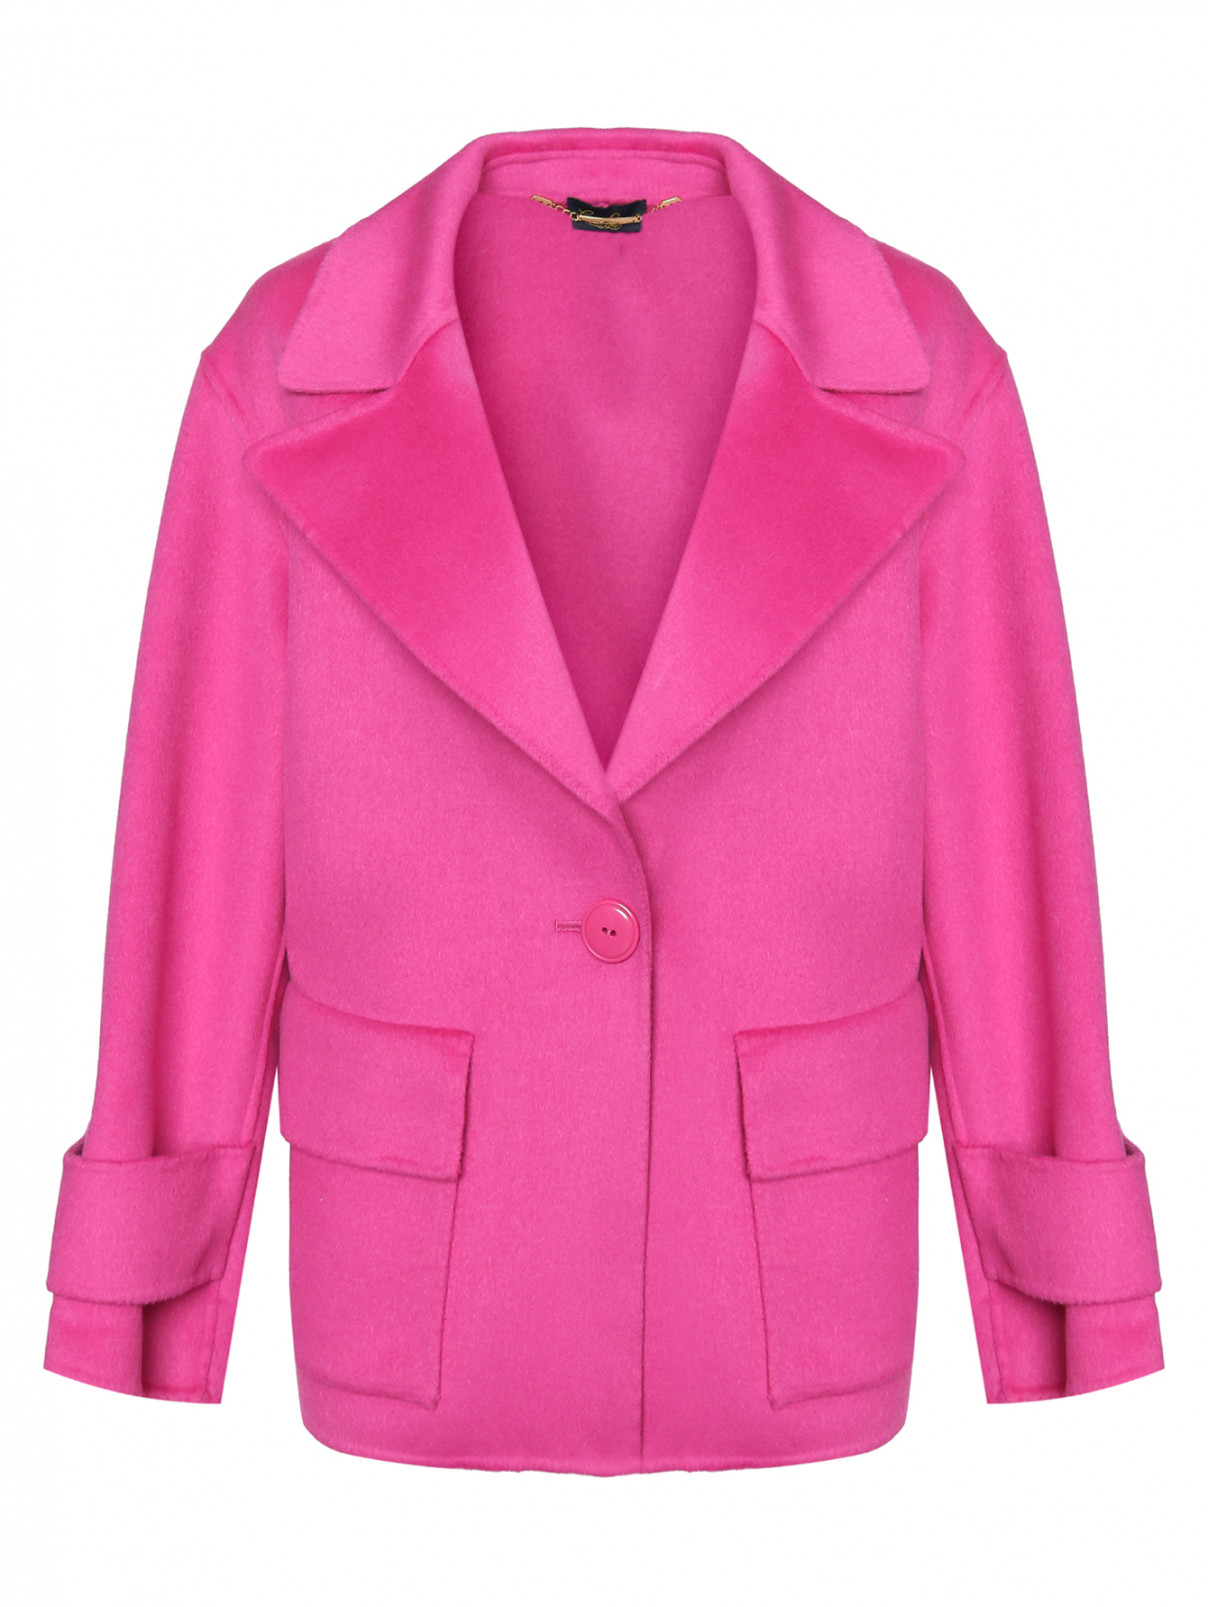 Полупальто из шерсти с накладными карманами Luisa Spagnoli  –  Общий вид  – Цвет:  Розовый